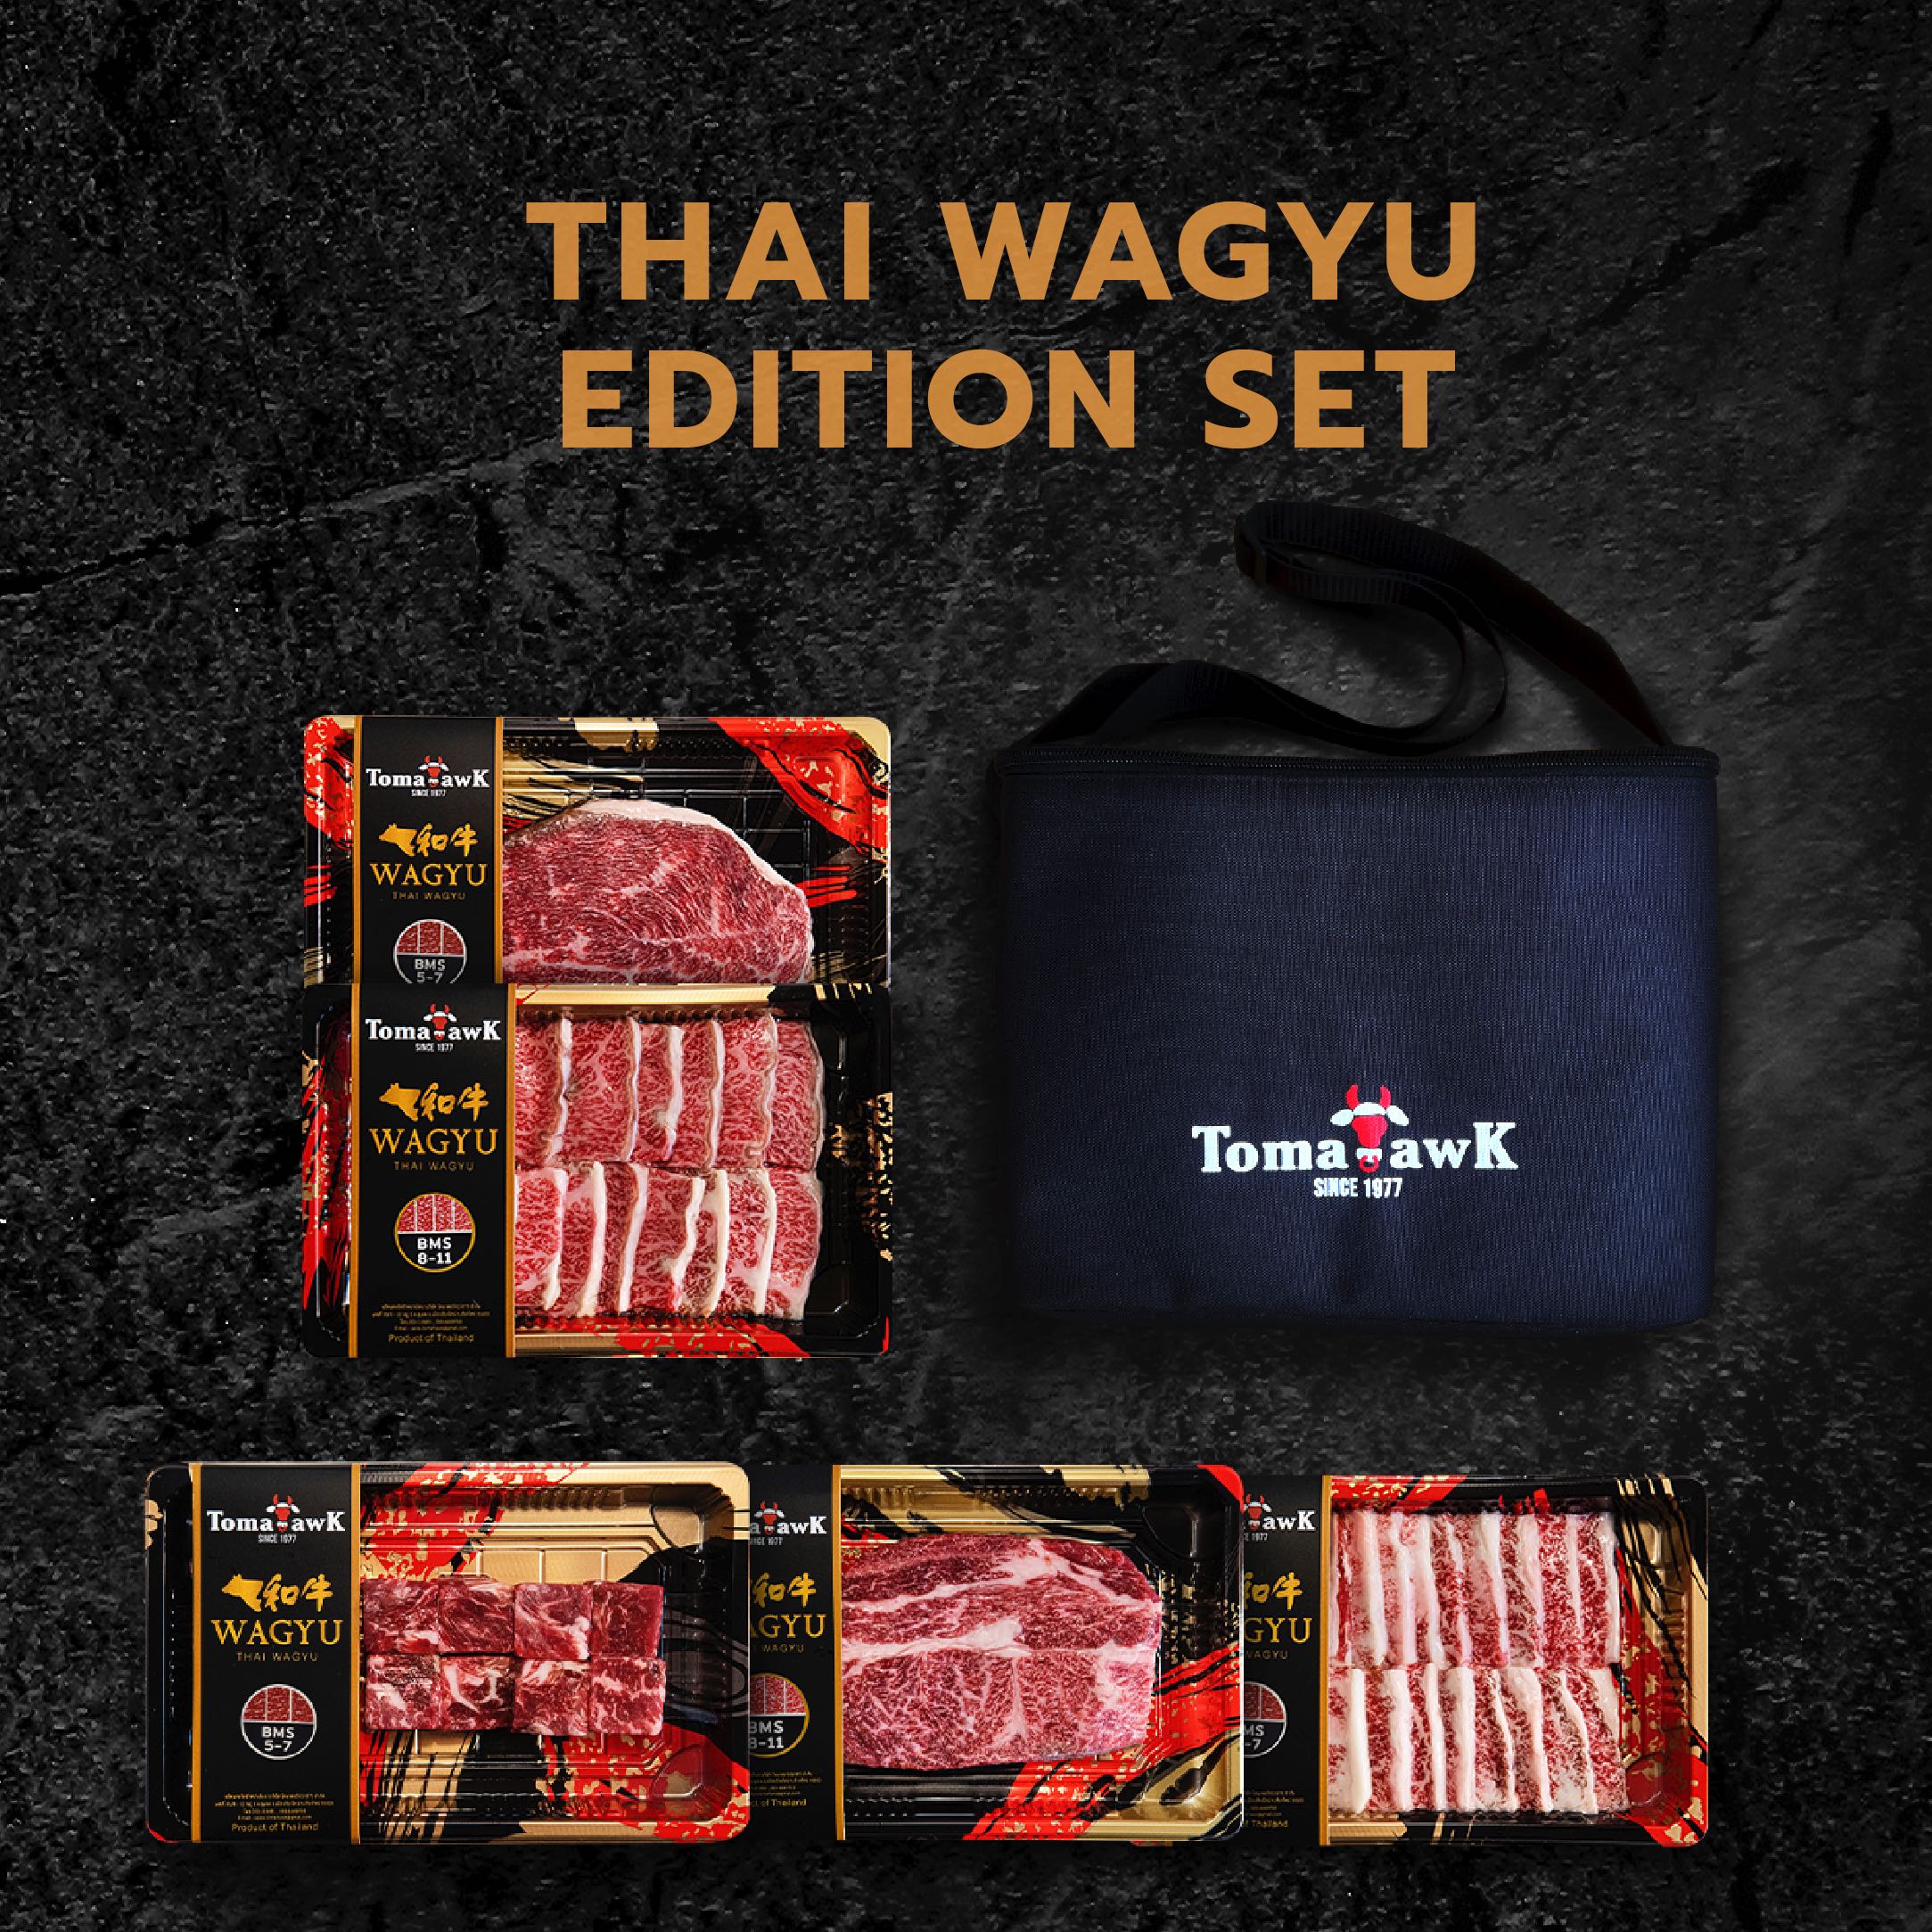 Thai Wagyu Edition set